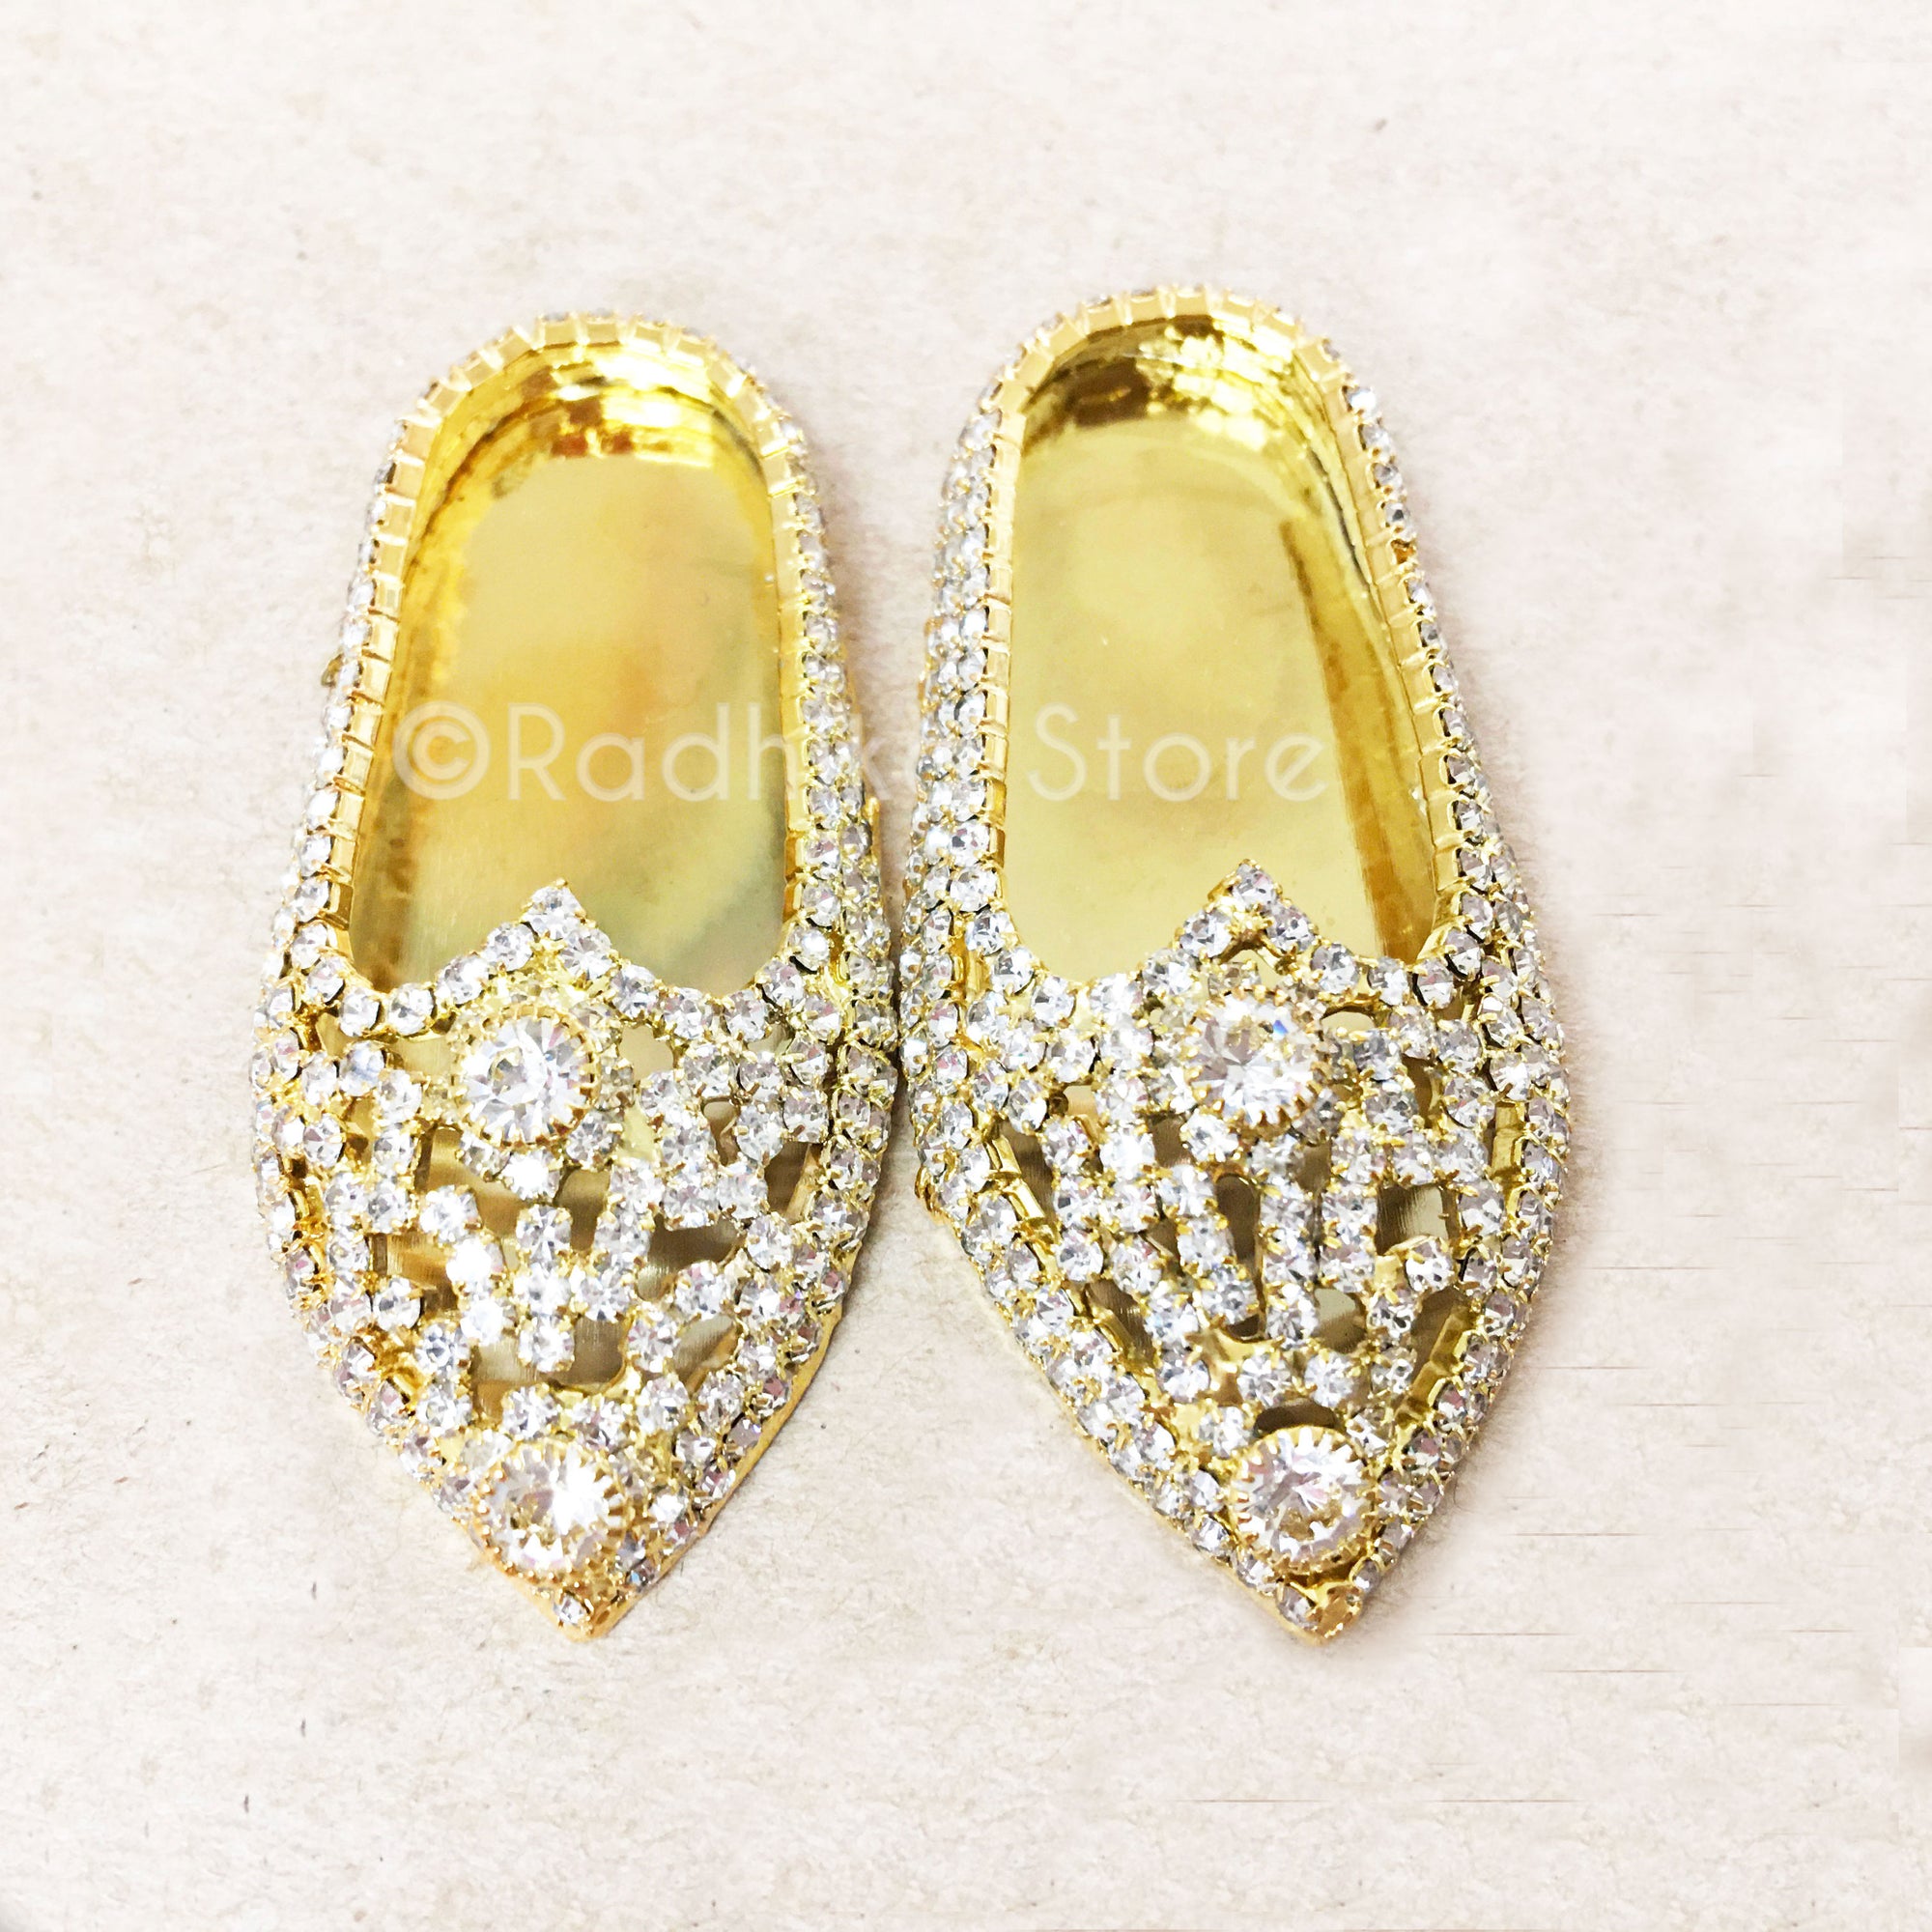 Diamond Rhinestone - Deity Shoes - Large Sizes